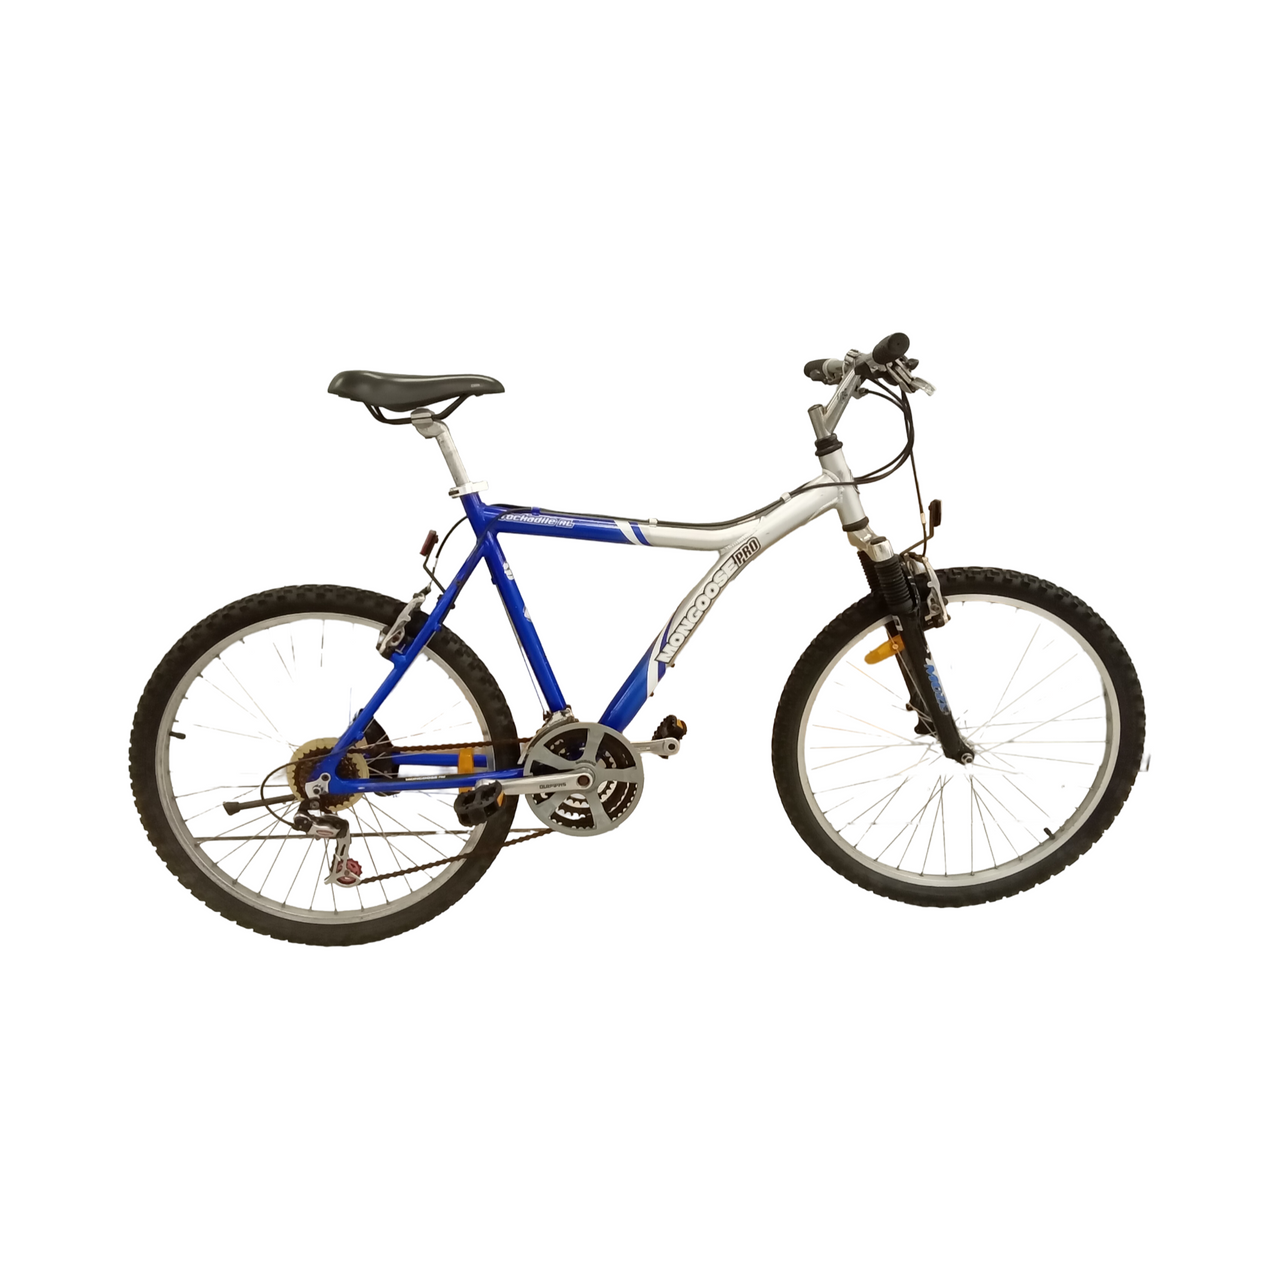 1854 - 54cm Blue,
Silver, Mountain Bike, Bike